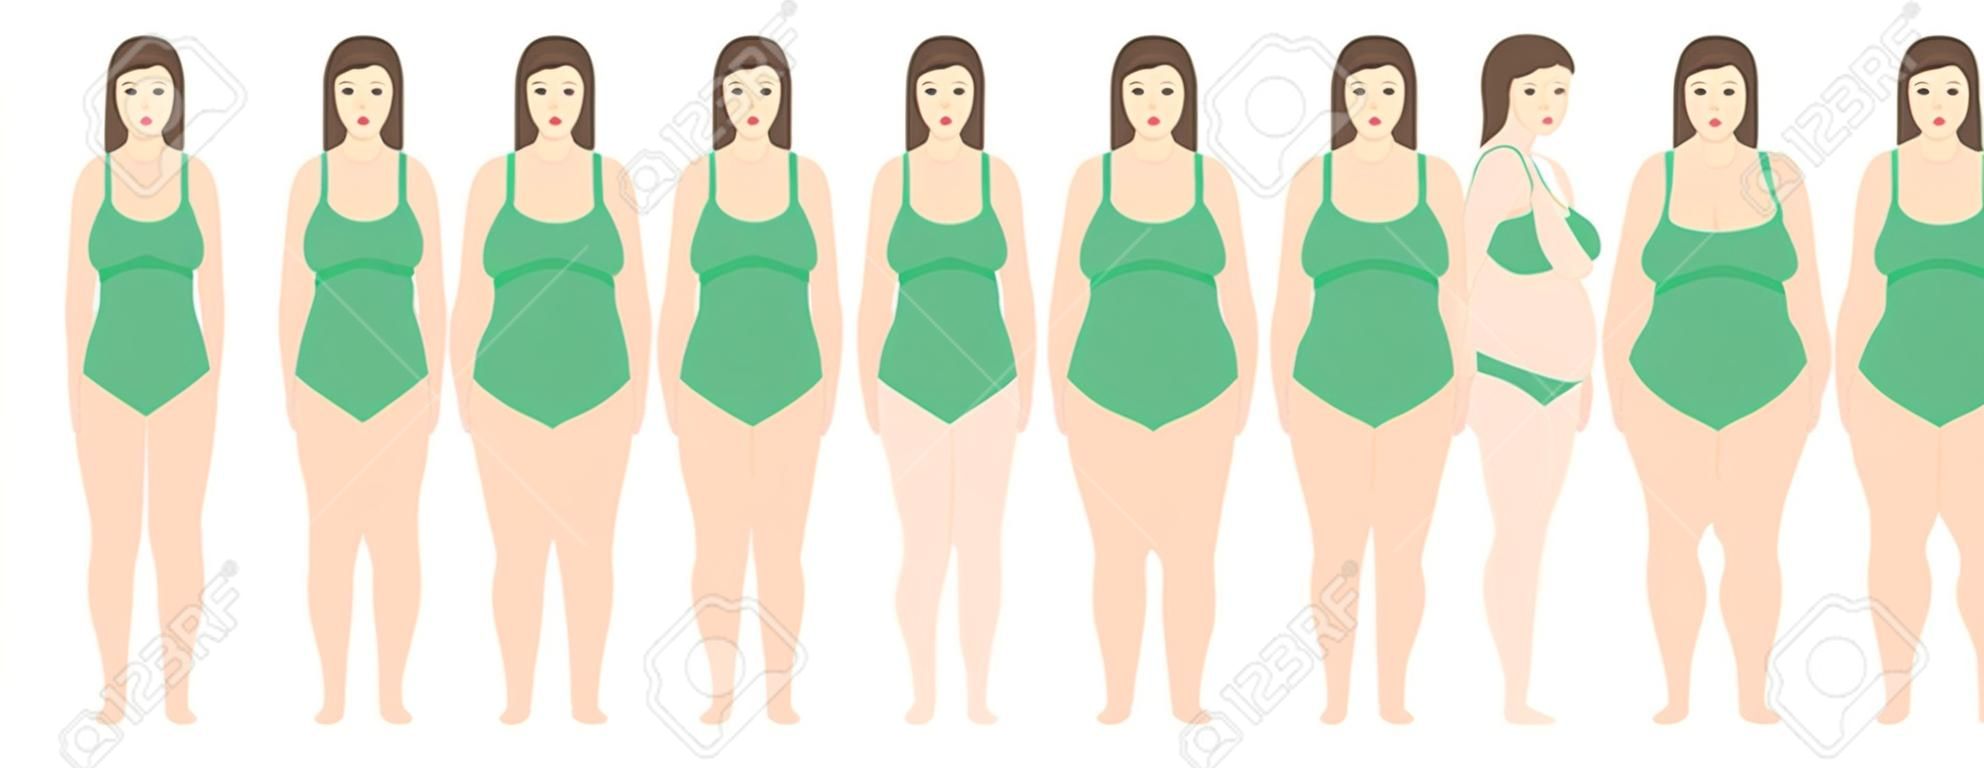 Illustrazione vettoriale di donne con peso diverso dall'anoressia all'estremo obeso. Indice di massa corporea, concetto di perdita di peso.